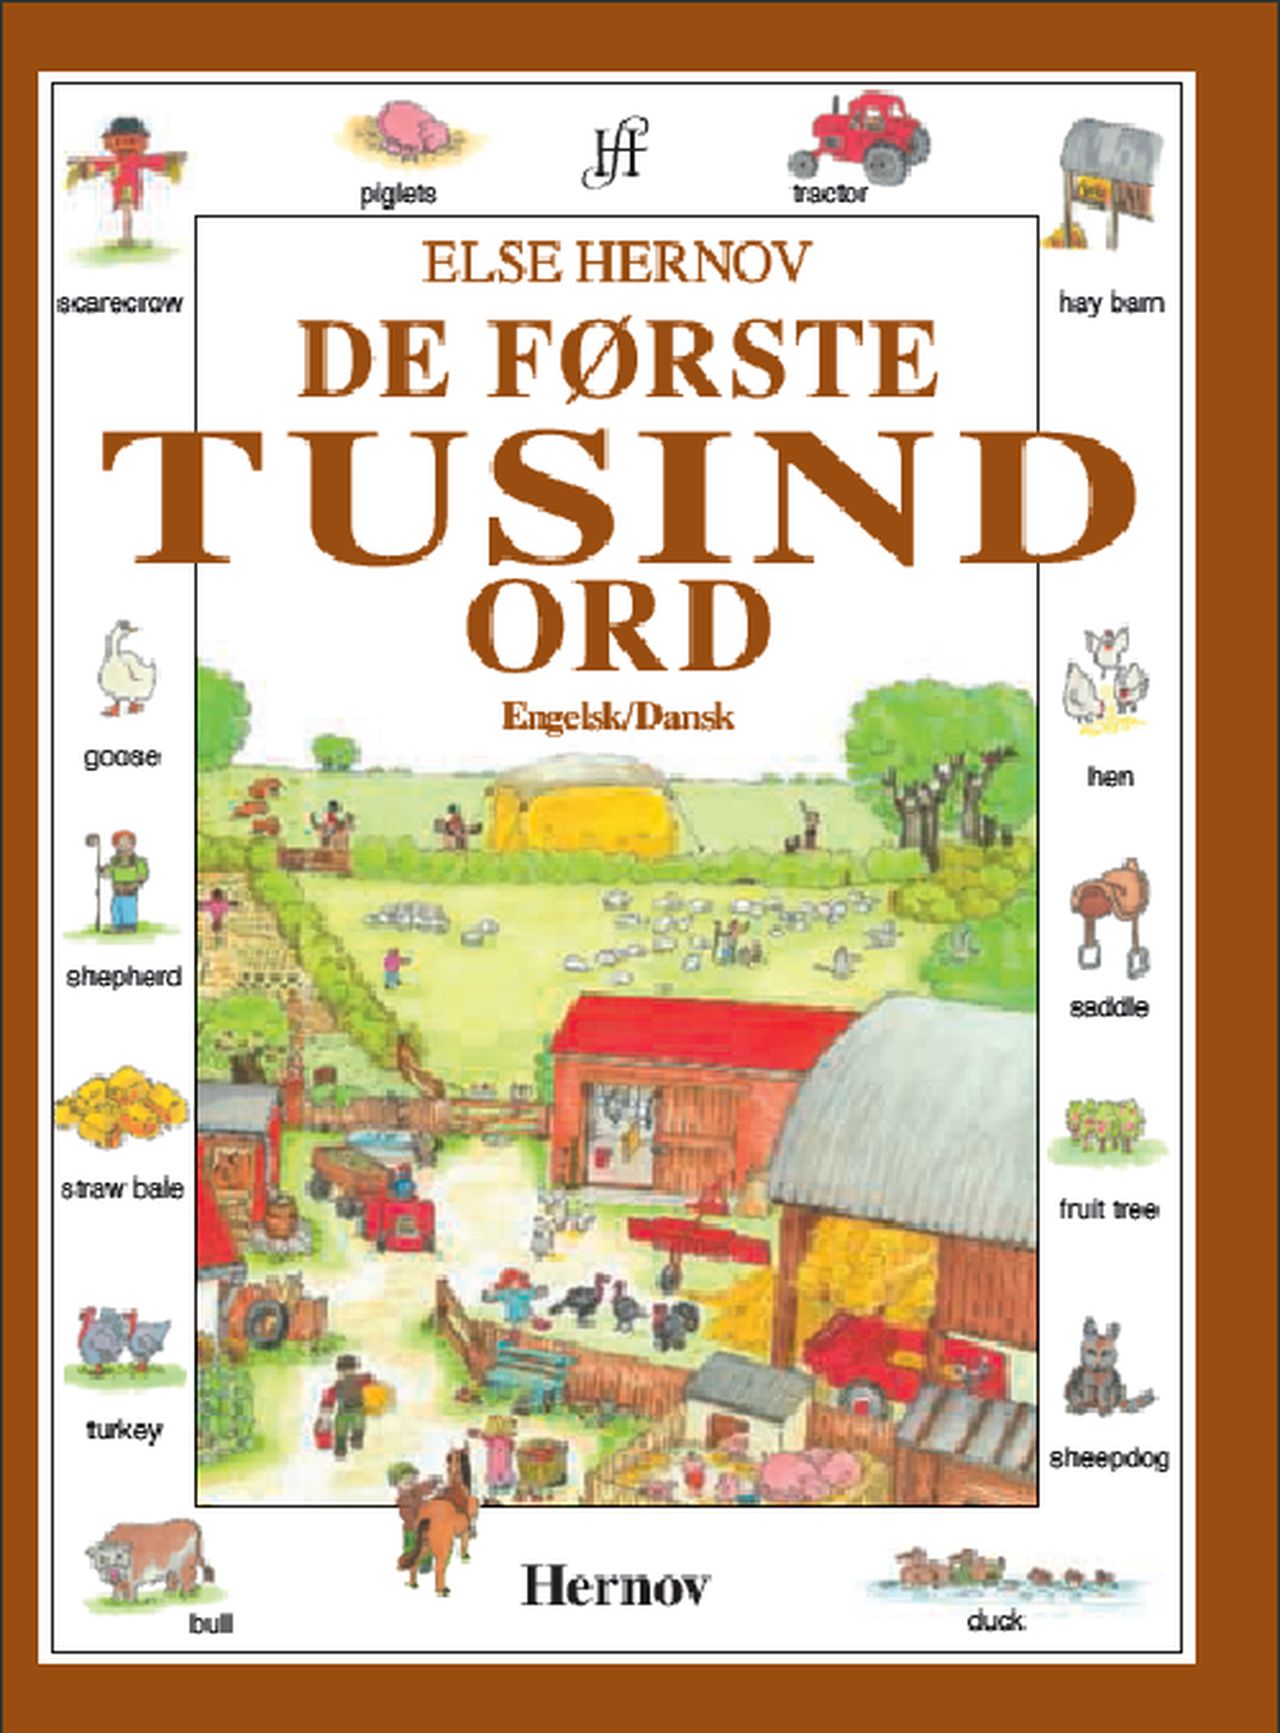 De første tusind ord - engelsk/dansk